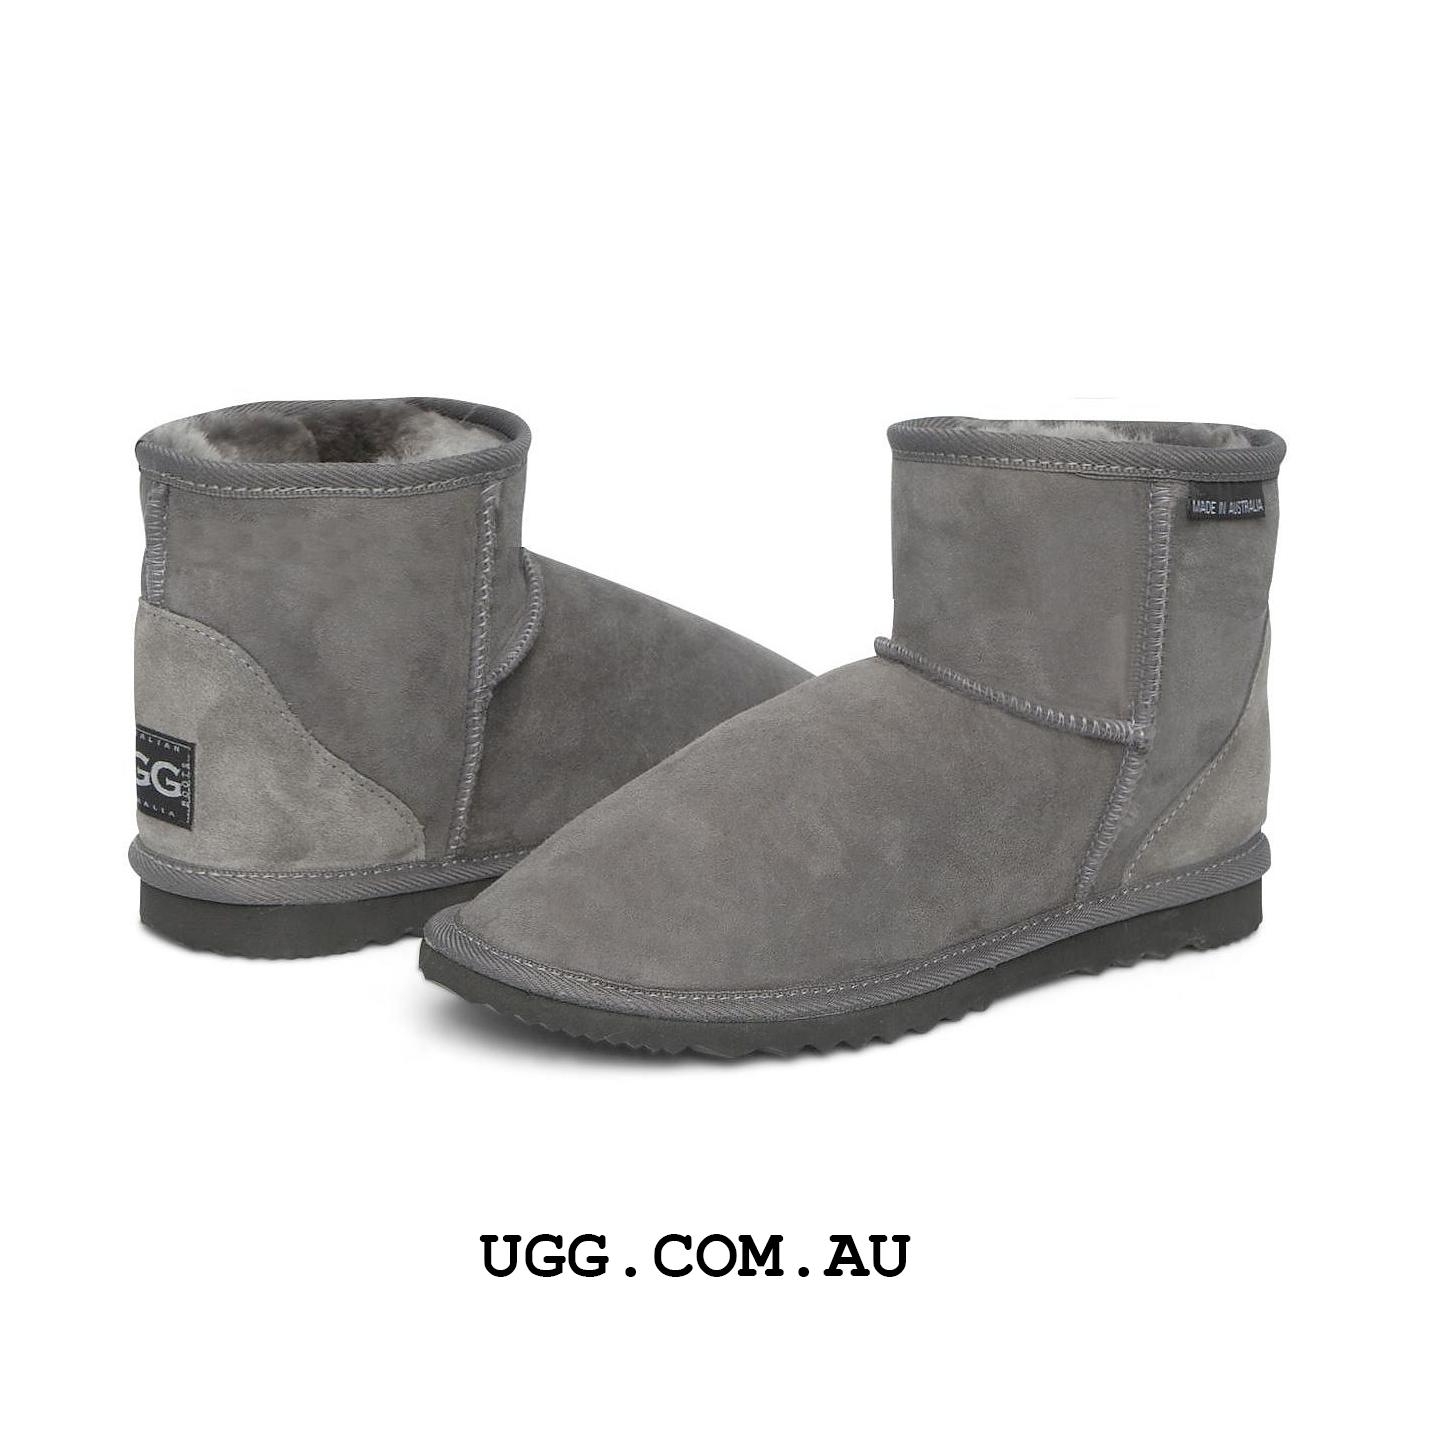 ULTRA Short UGG boots (Extra Large Sizes)